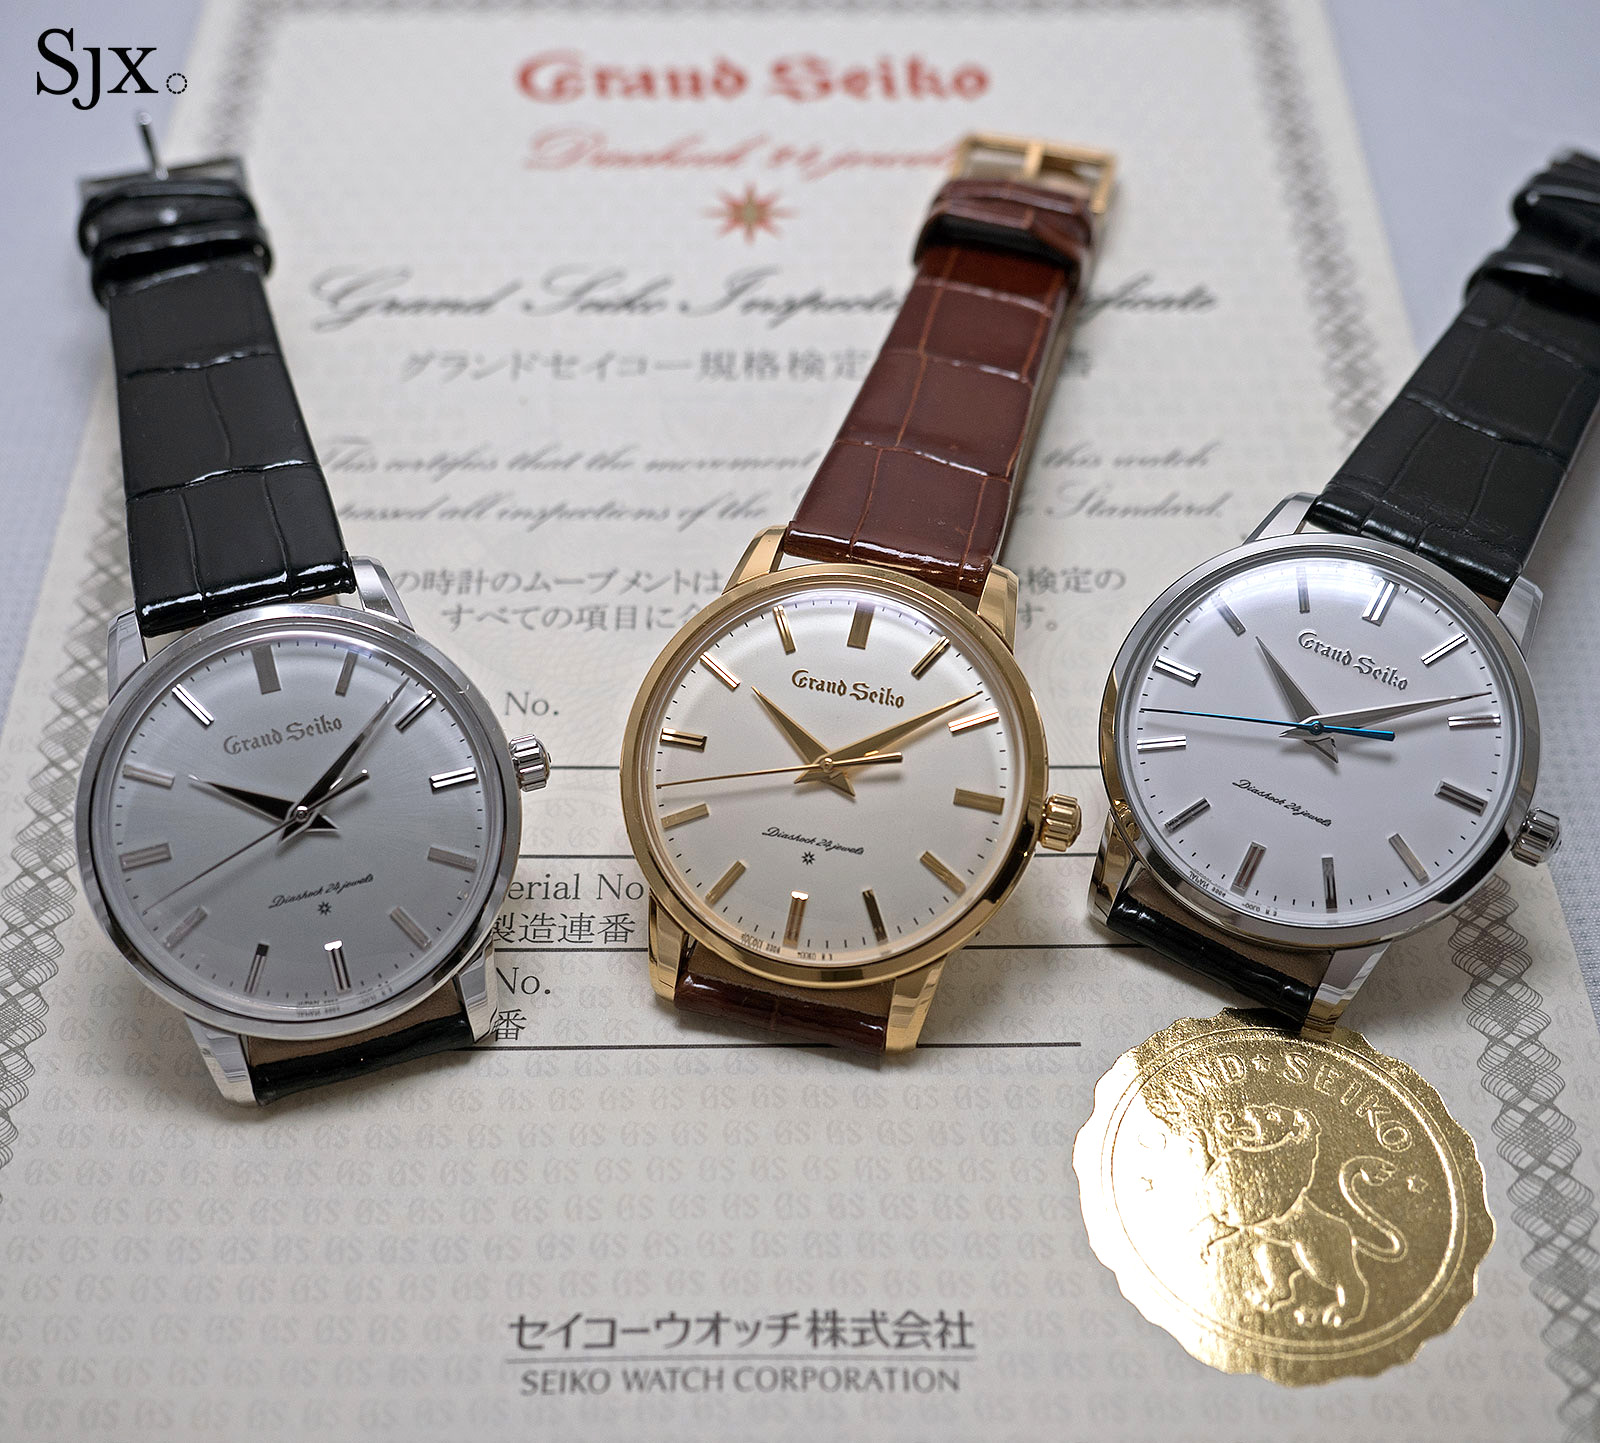 grand seiko 3180 for sale, Off 77% ,